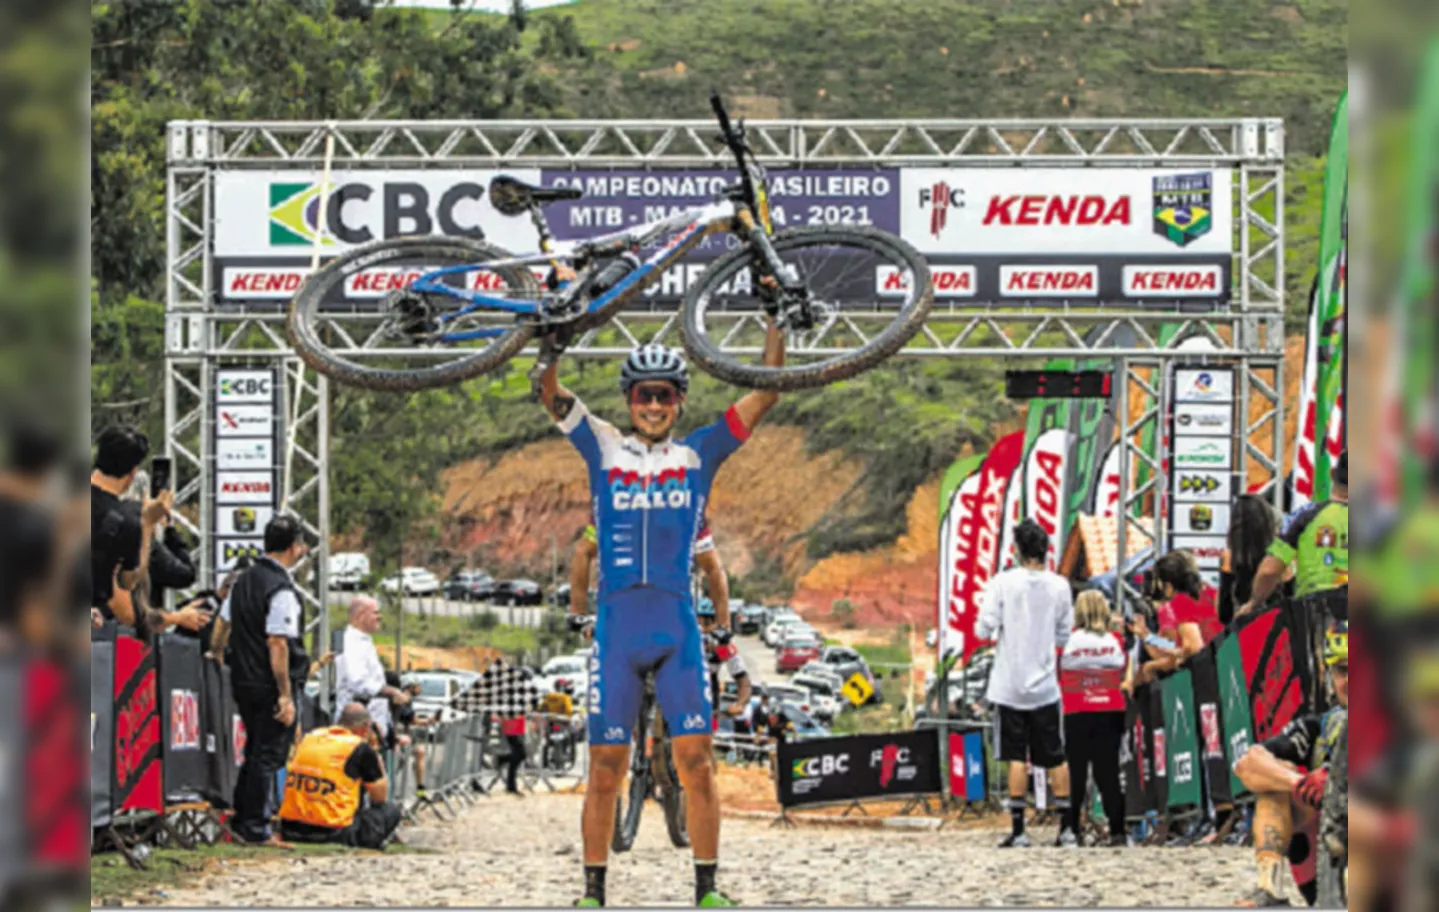 Ulan Galinski exibe bicicleta com a qual foi campeão brasileiro na categoria maratona. O título foi conquistado no último domingo | Foto: Felipe Almeida | Arquivo pessoal